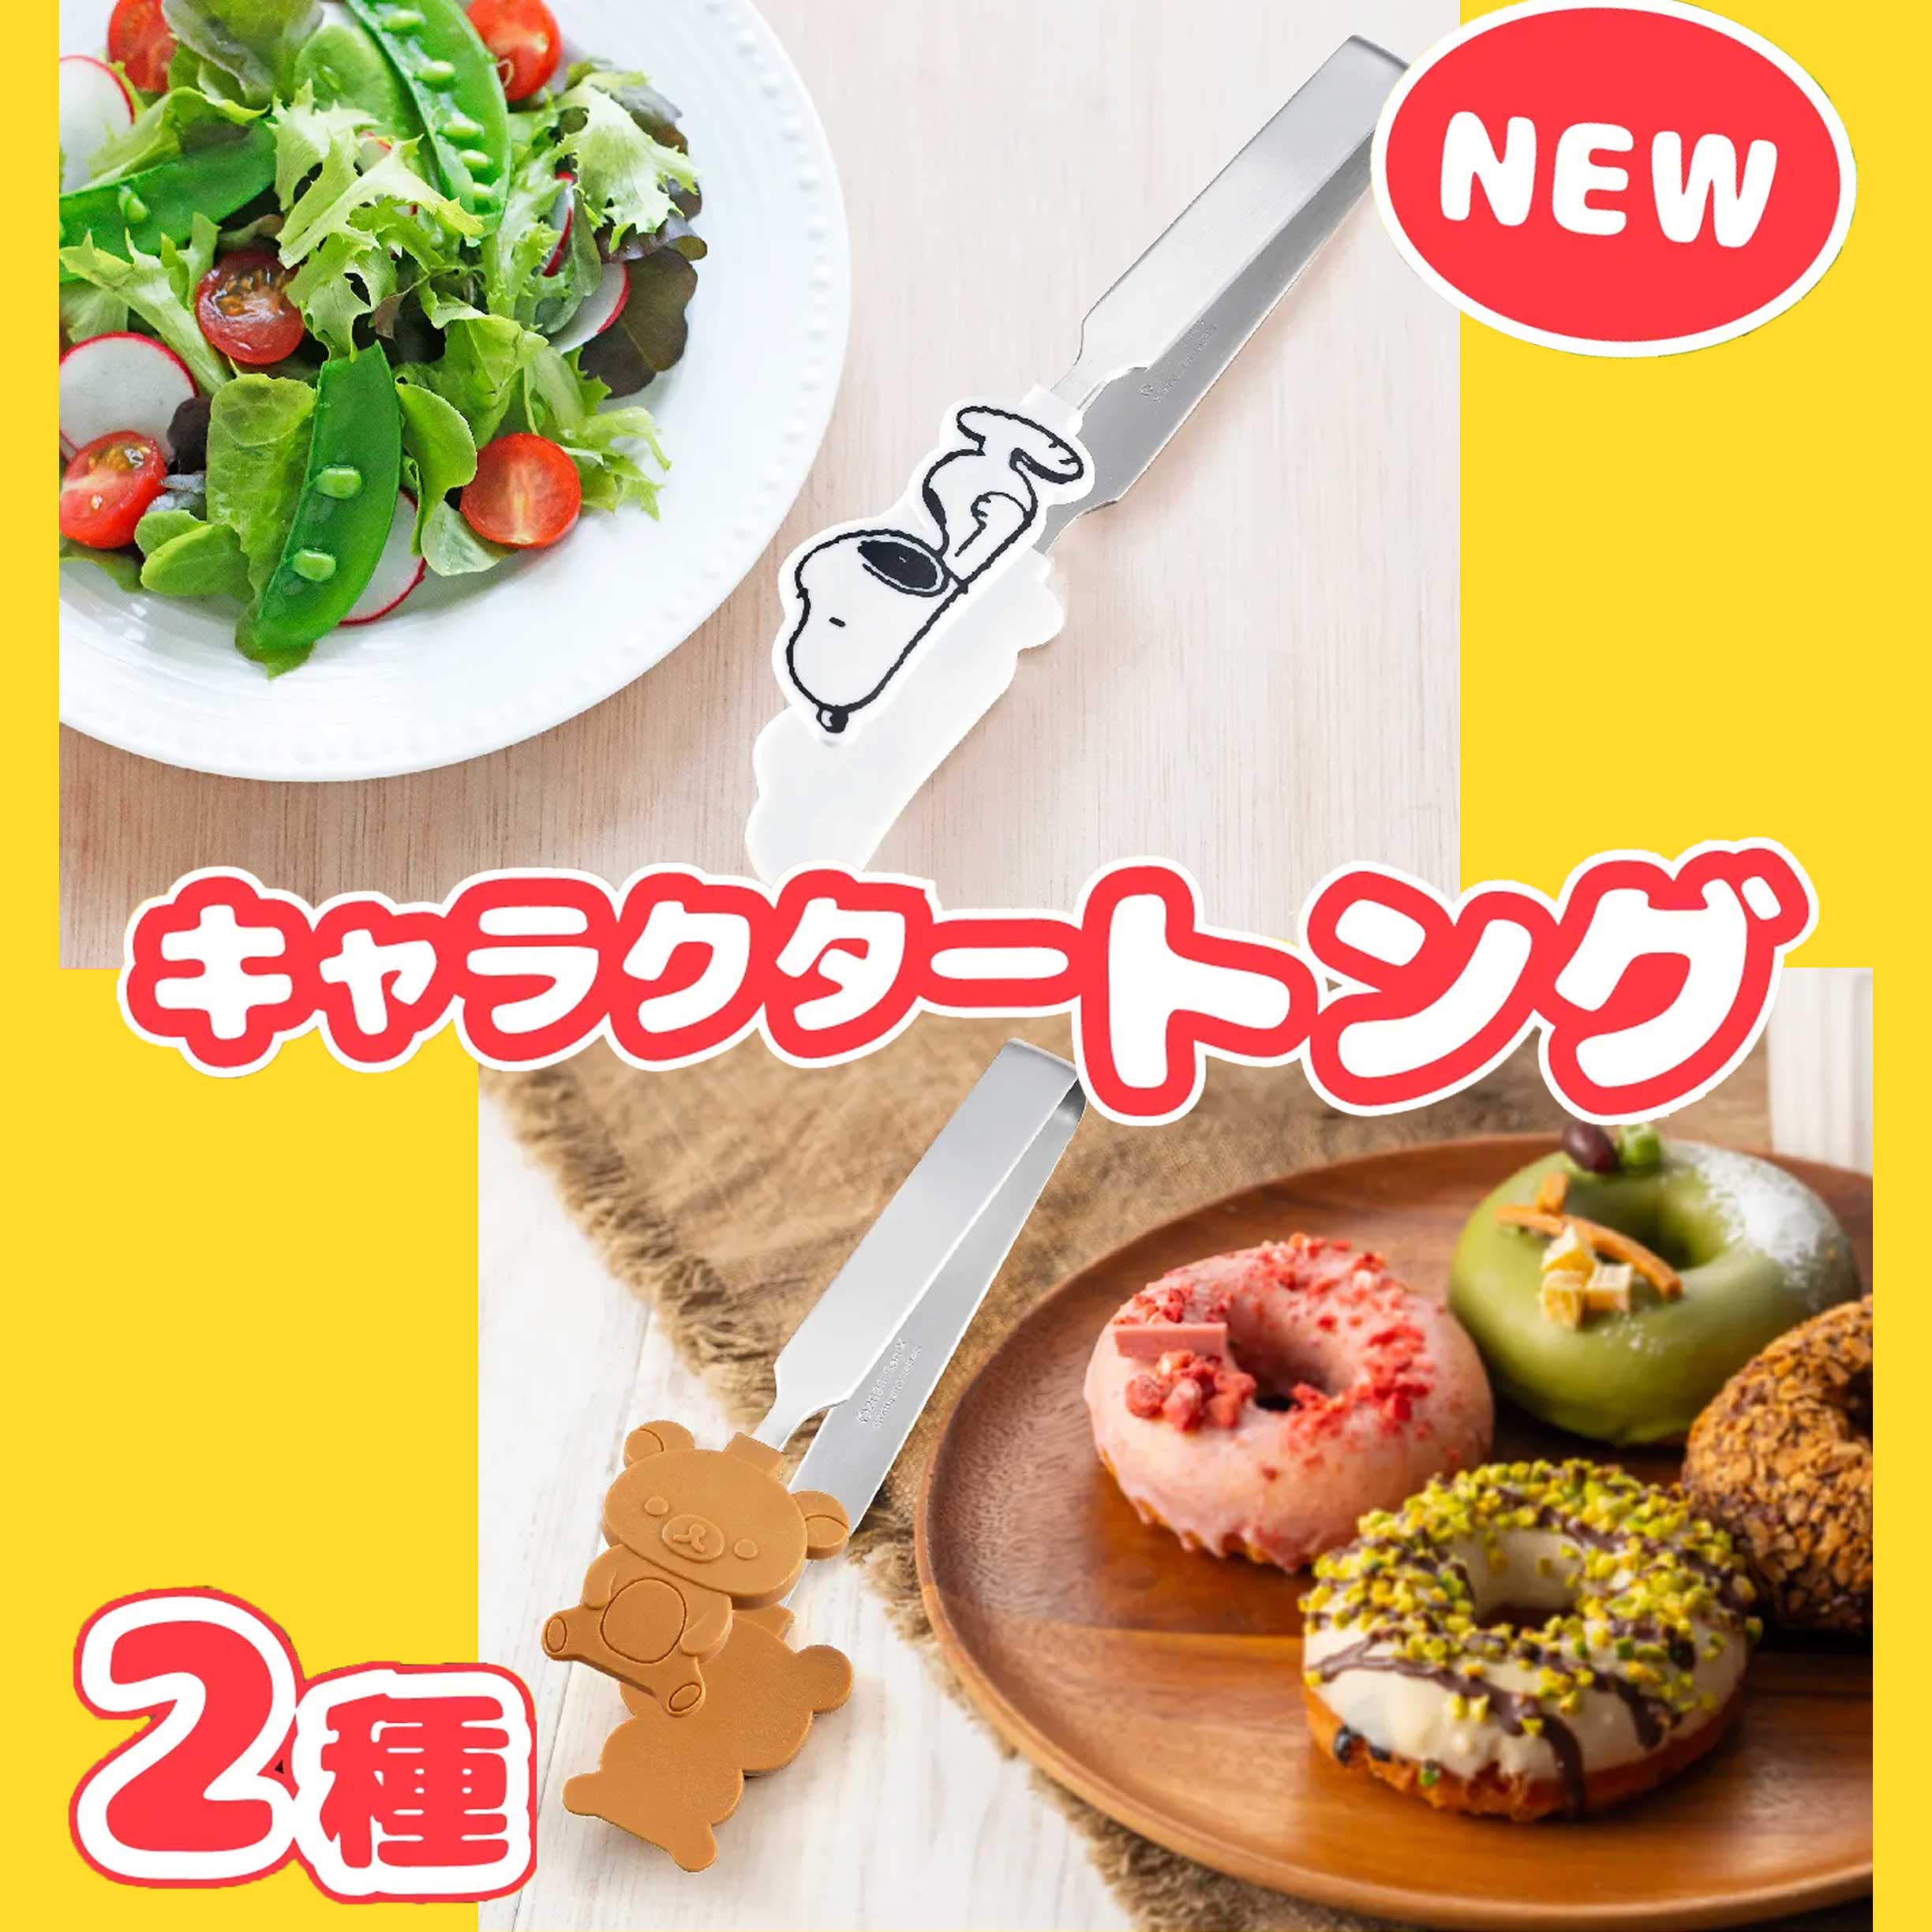 不鏽鋼食物夾-拉拉熊 Rilakkuma san-x 史努比 SNOOPY PEANUTS 日本進口正版授權